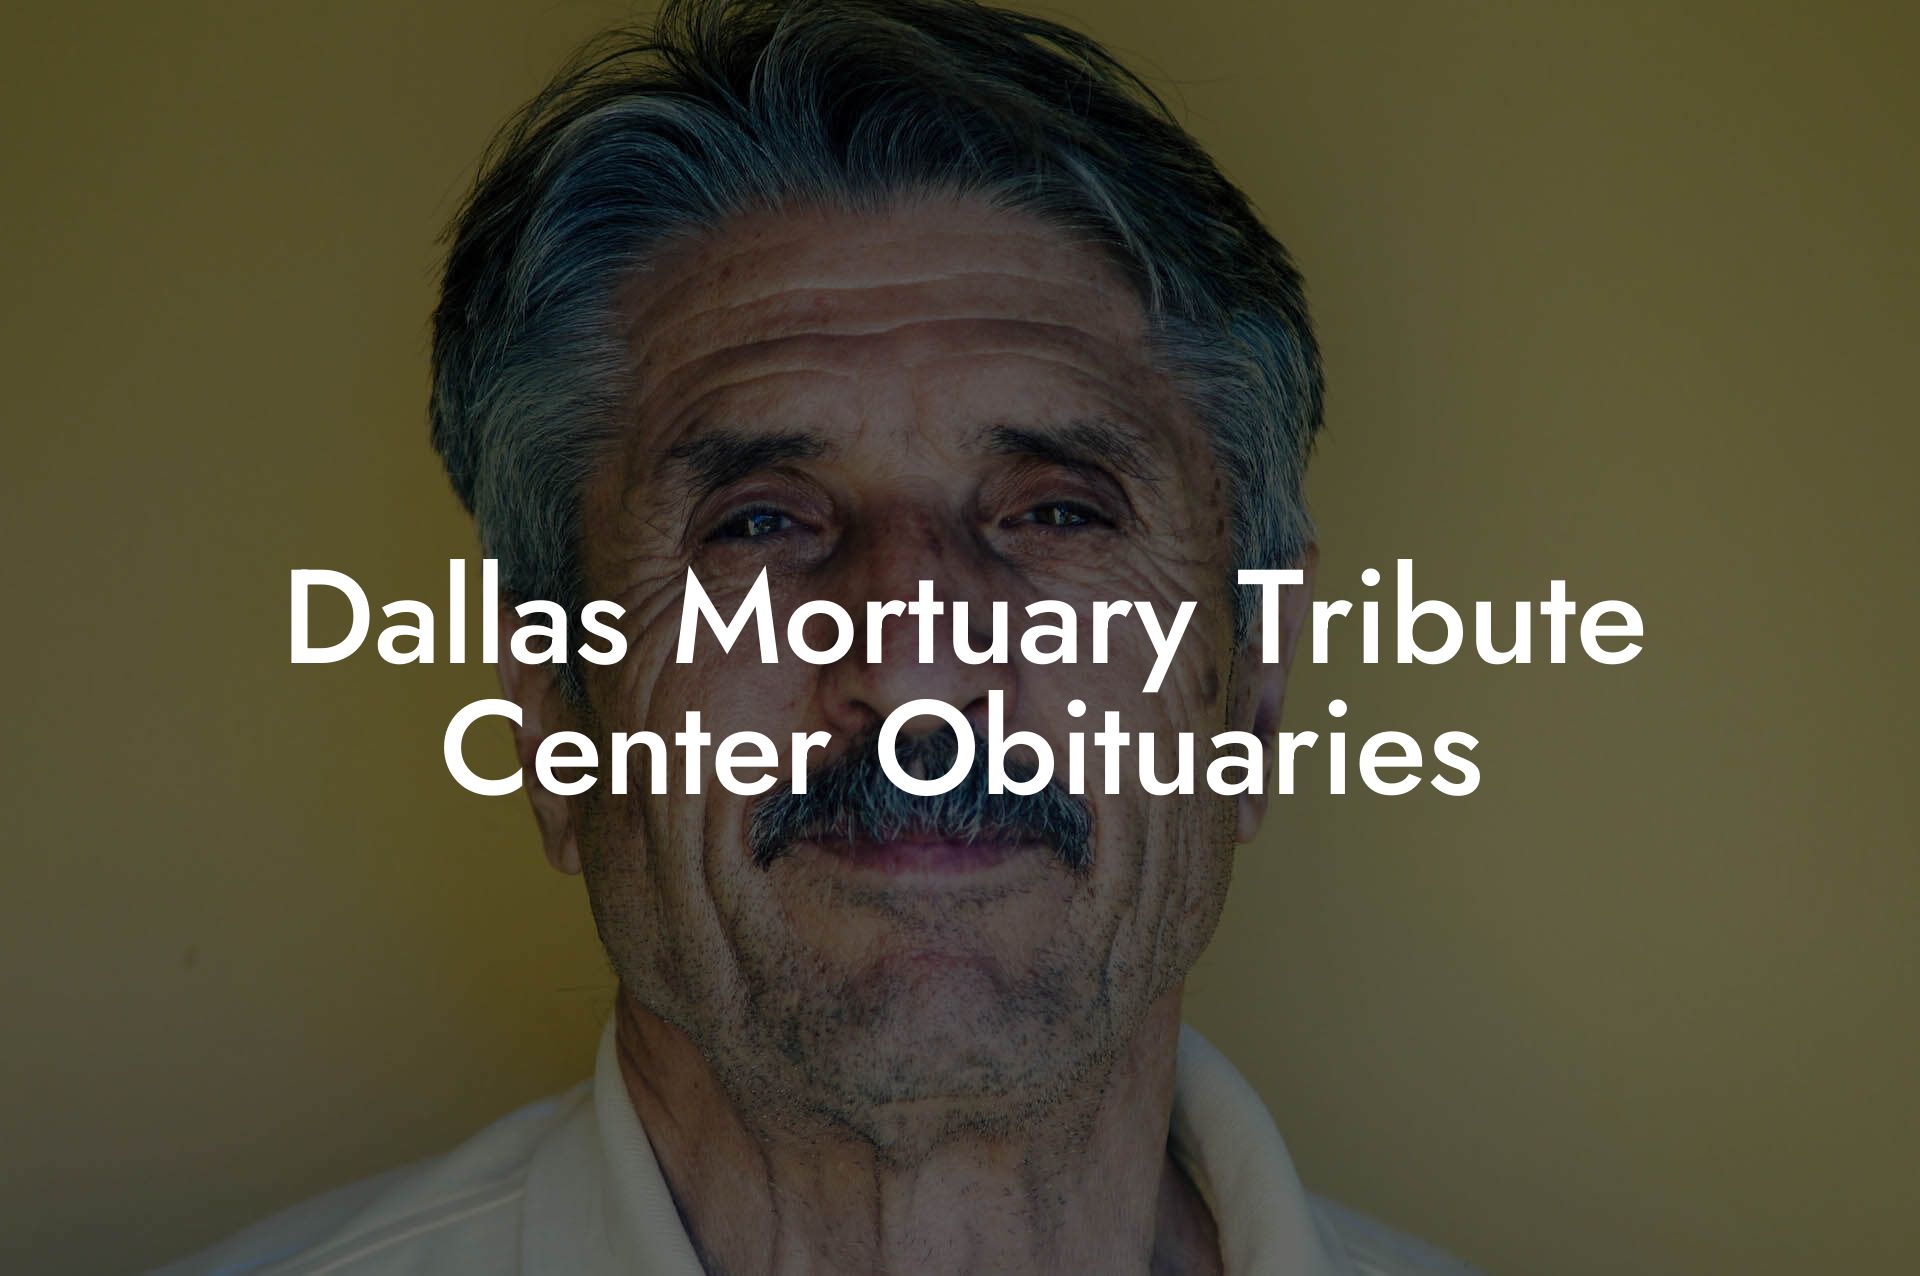 Dallas Mortuary Tribute Center Obituaries